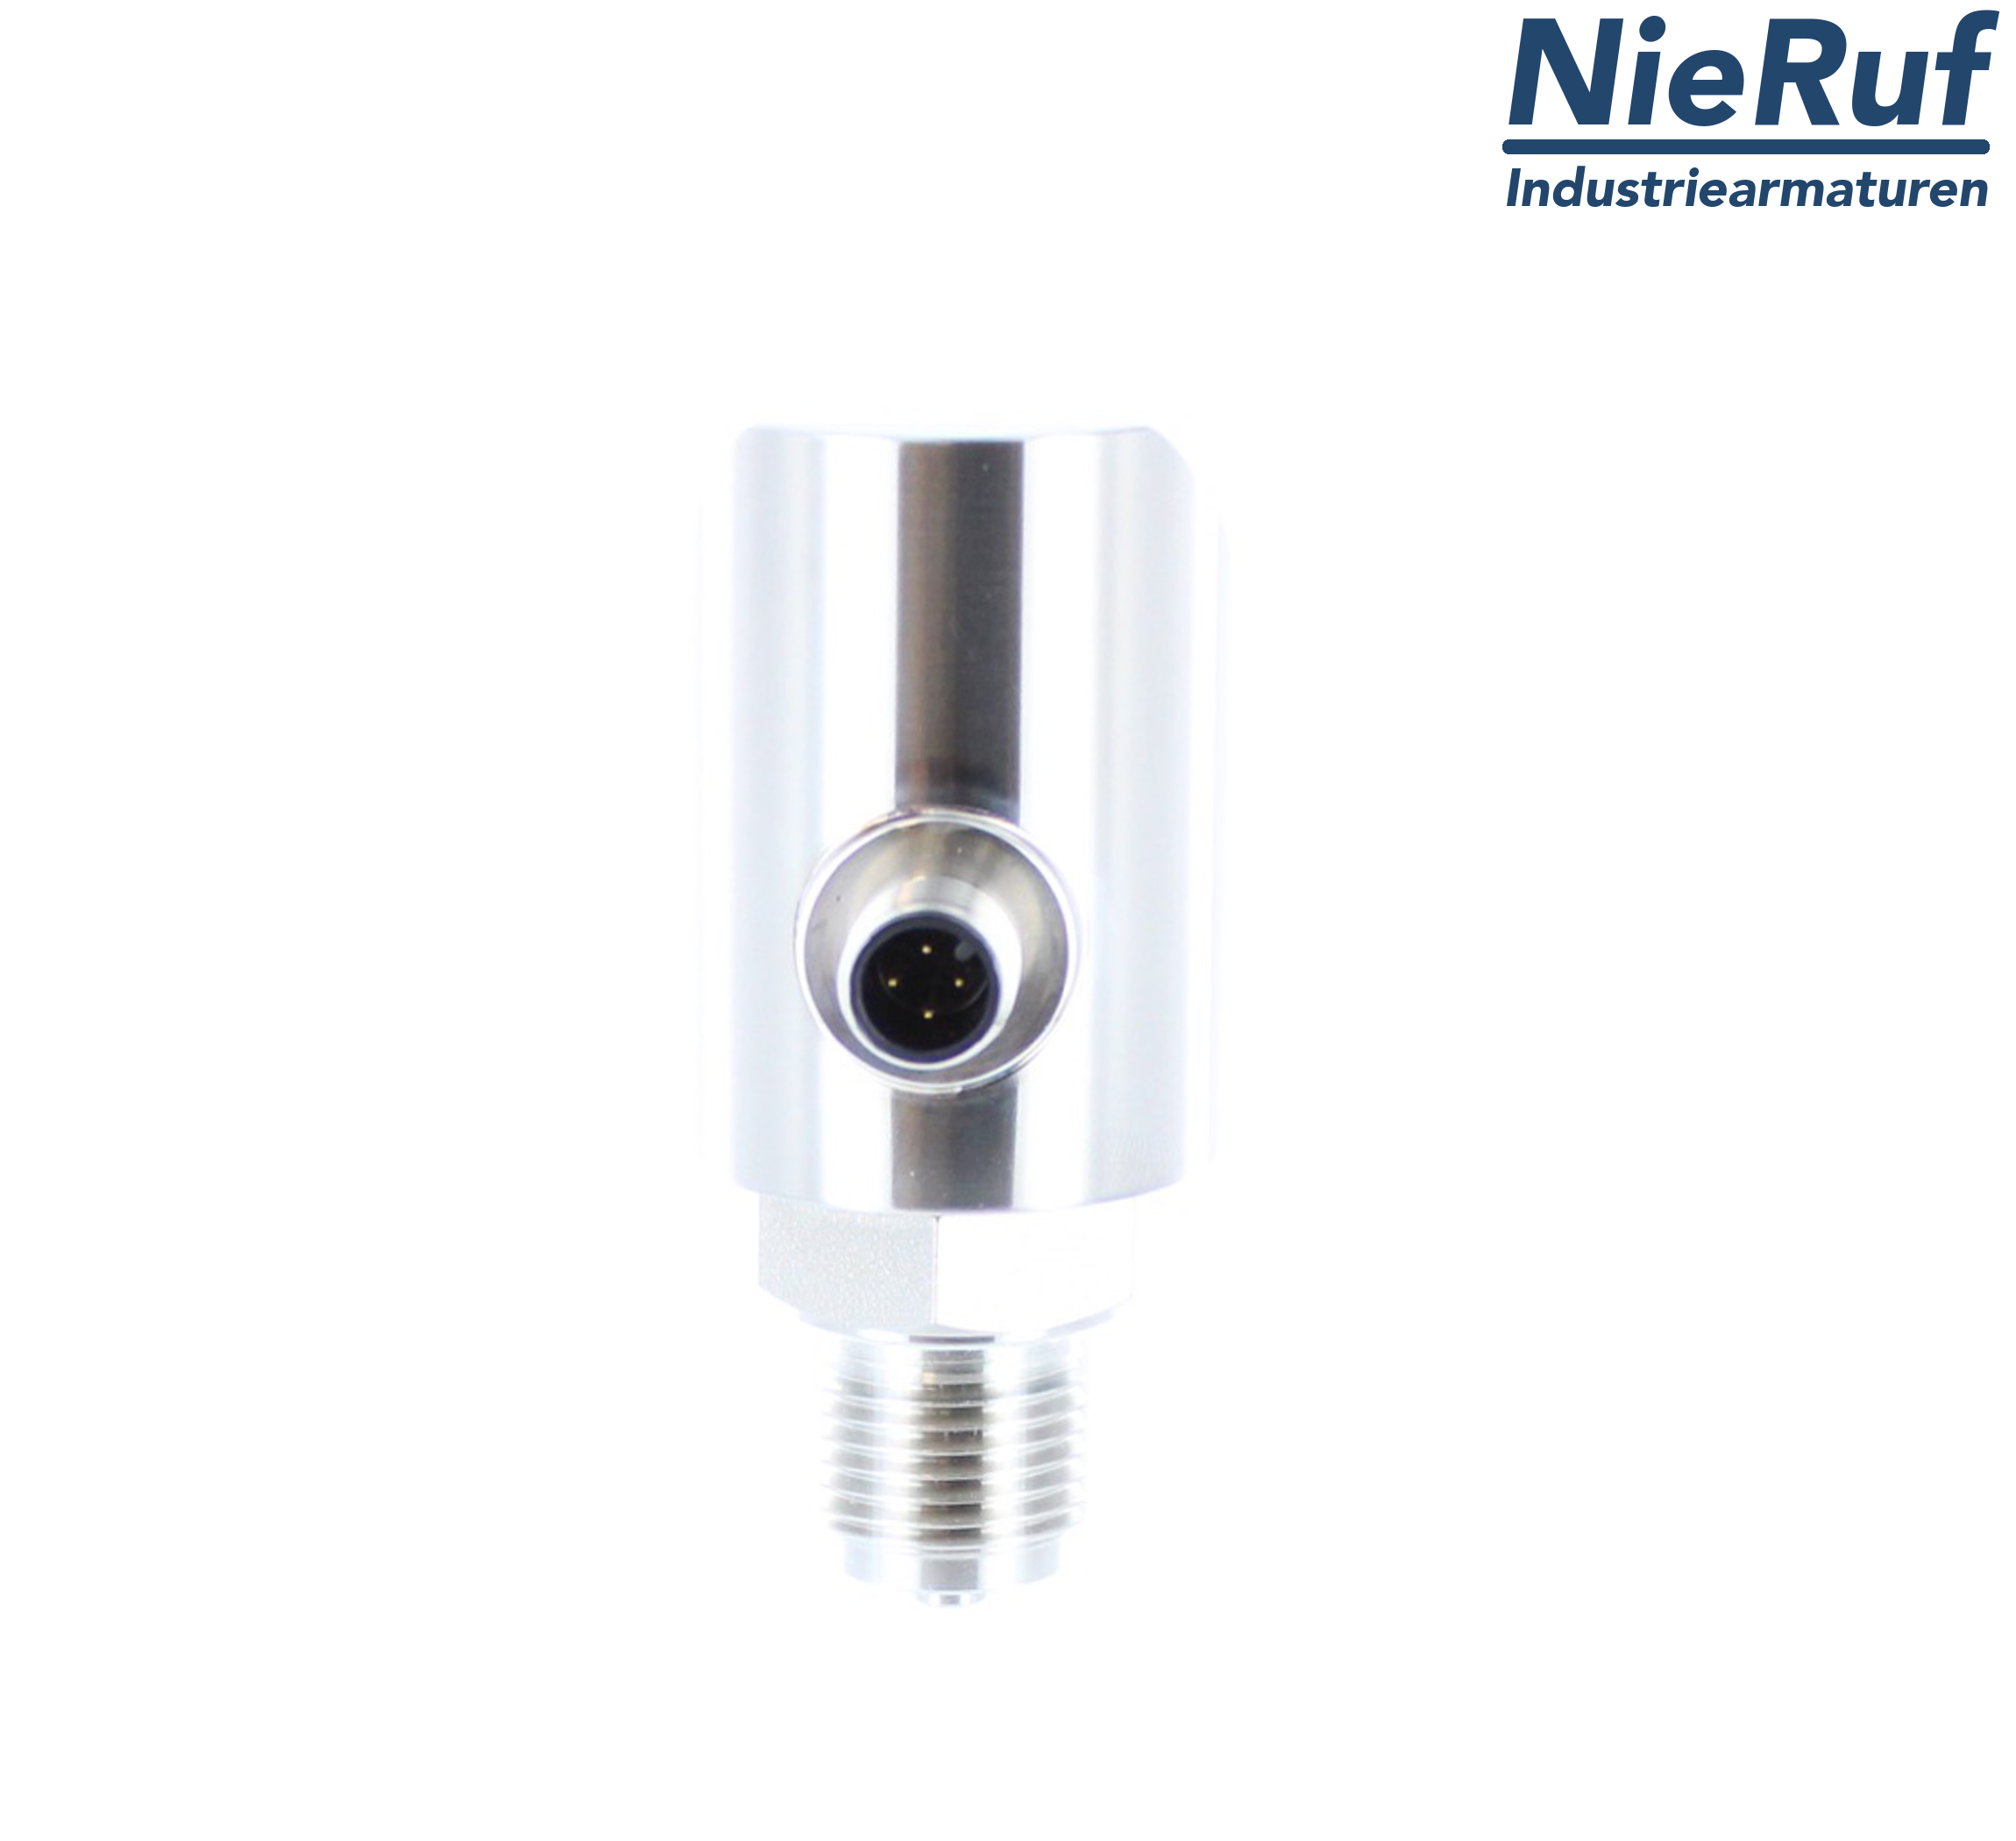 digital pressure sensor G 1/2" B 5-wire: 2xPNP, 1x4 - 20mA FPM 0,0 - 25,0 bar